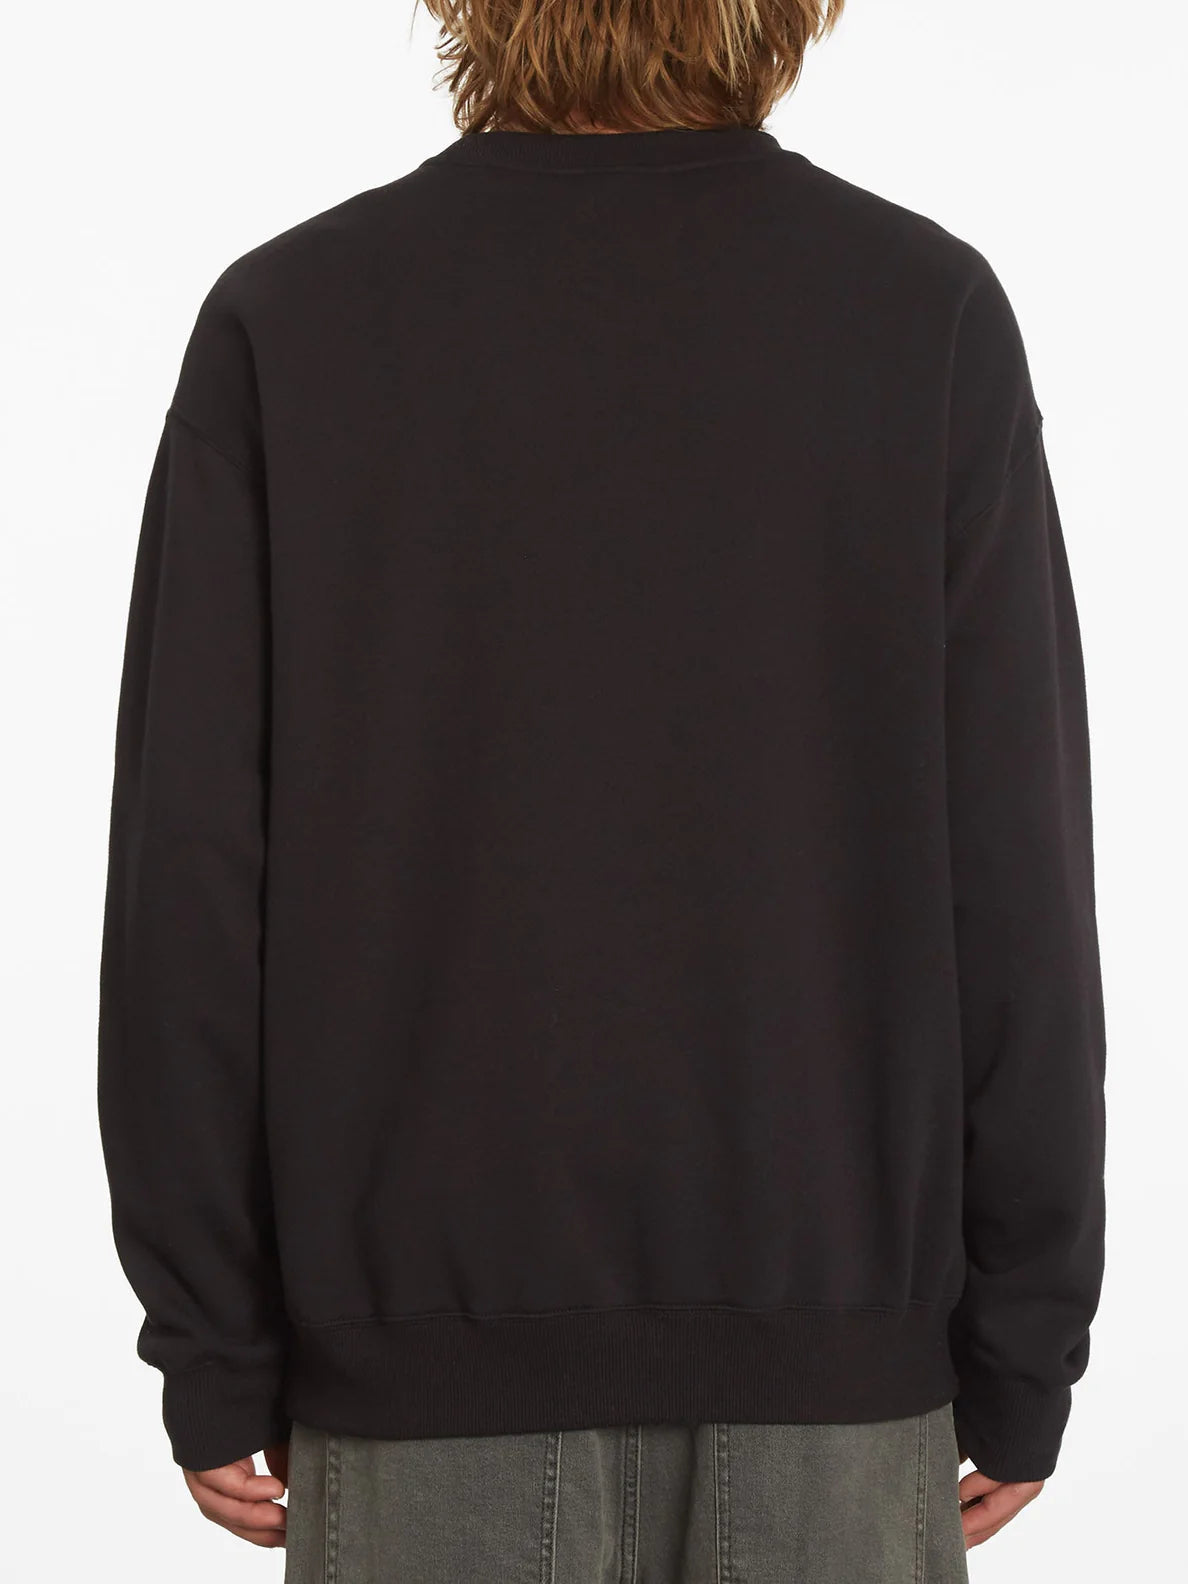 Volcom Single Stone Sweatshirt - Black-Mens Clothing-troggs.com